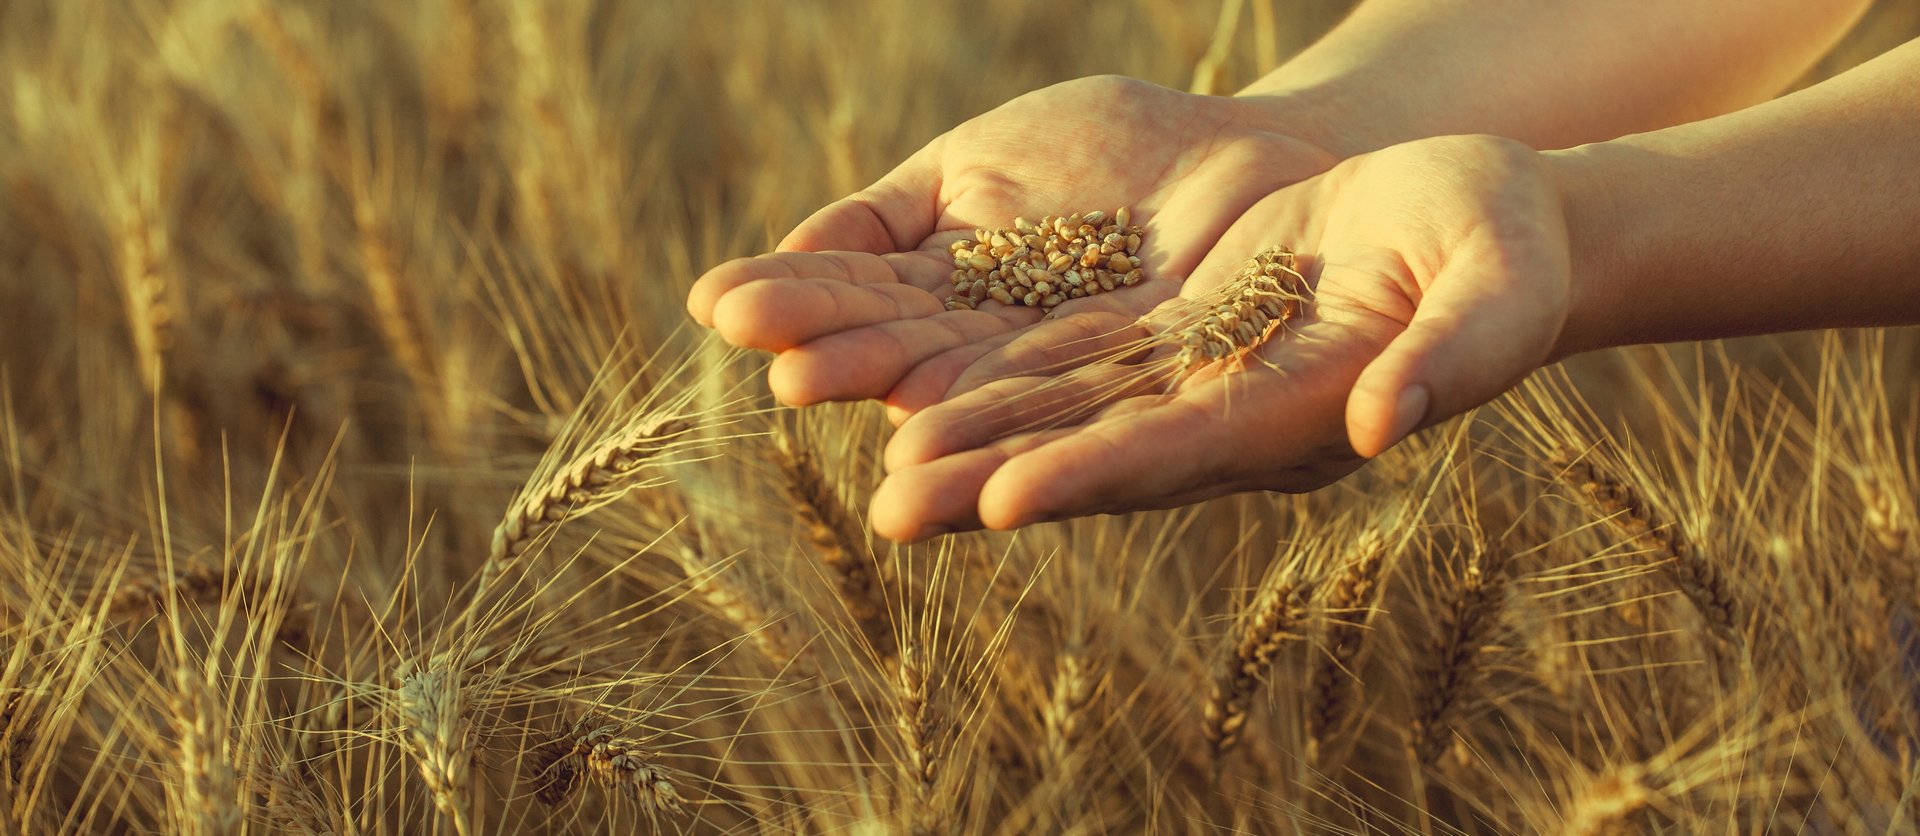 Hands in grain field